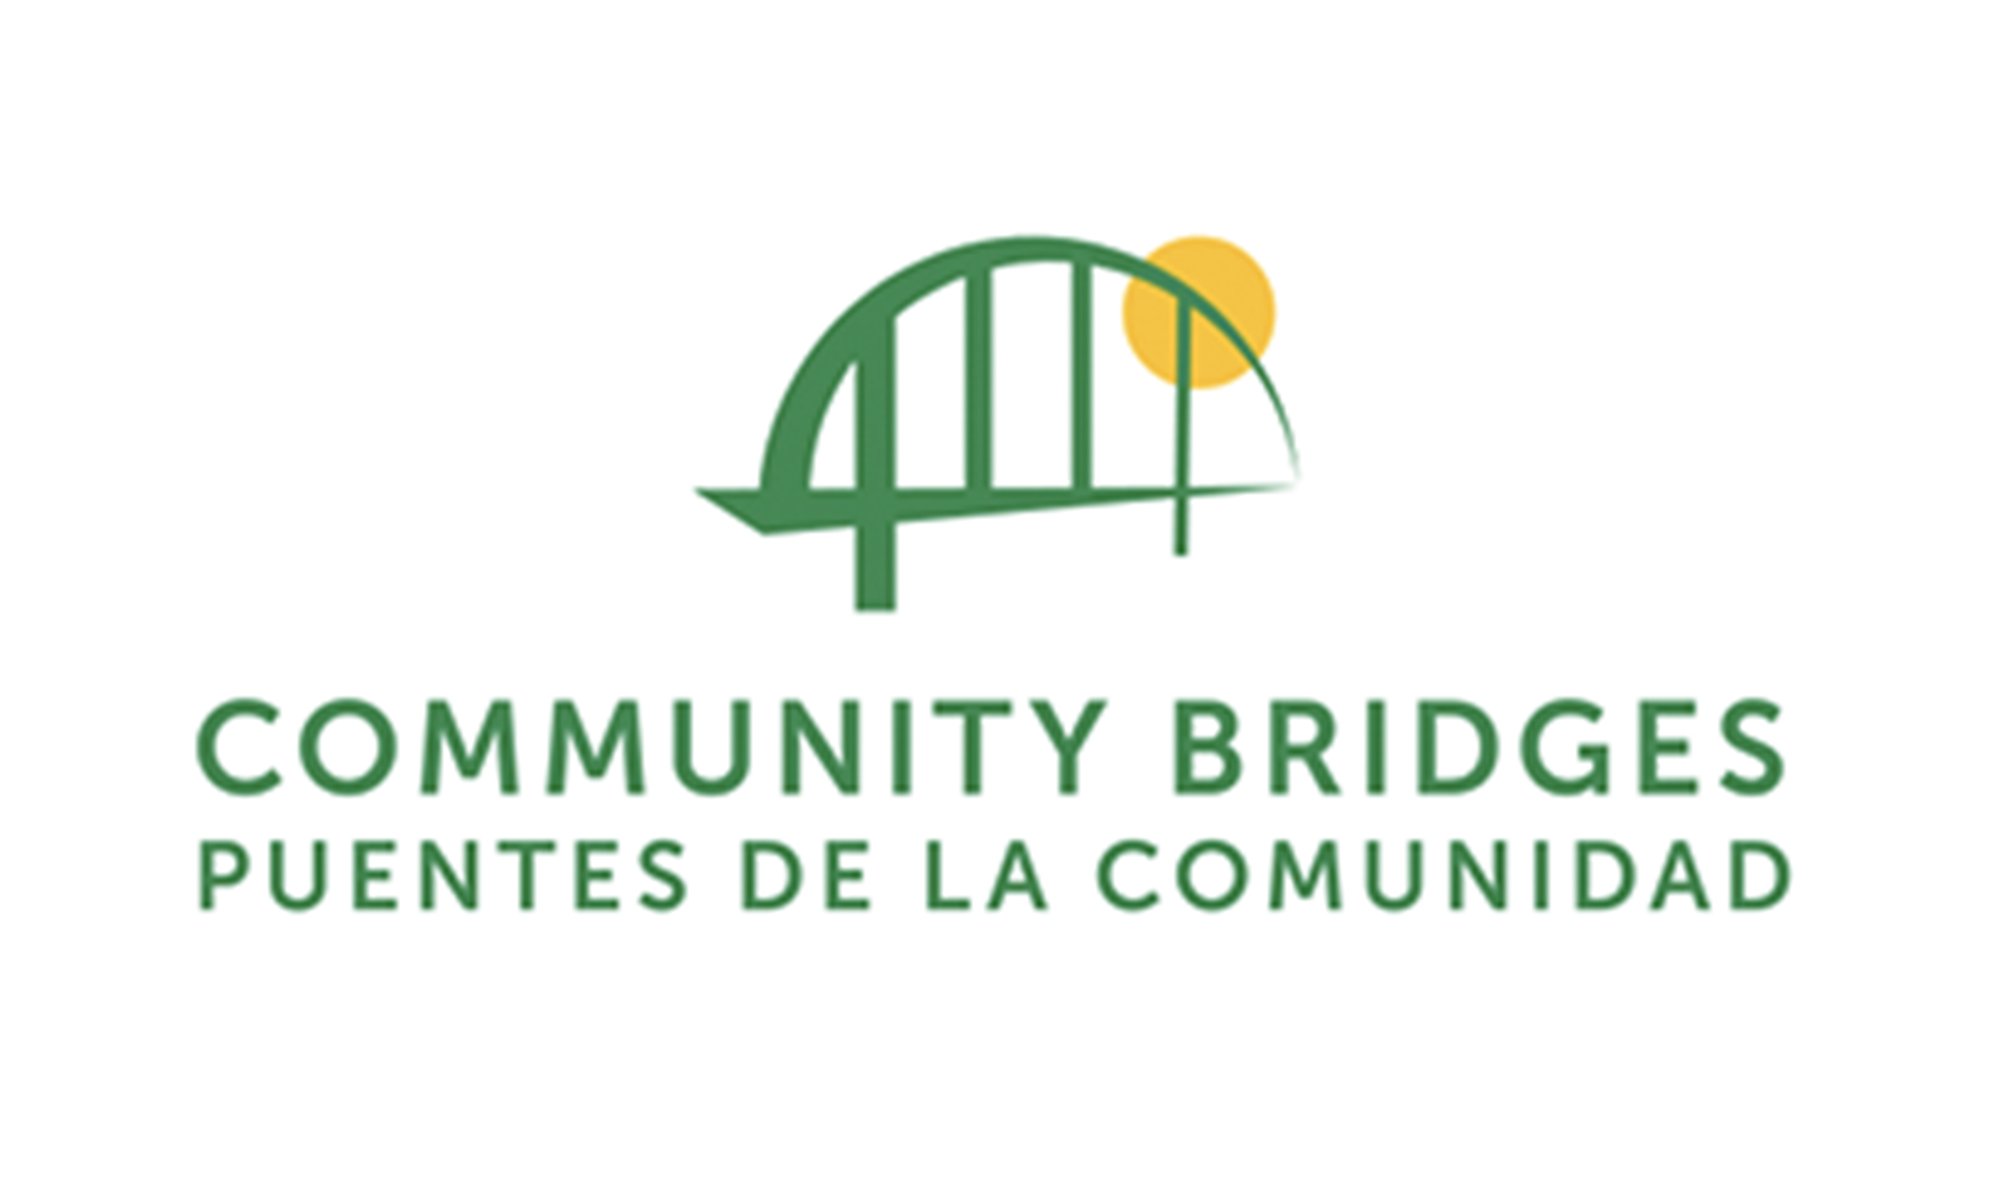 Puentes de la Comunidad: Puentes de la Comunidad